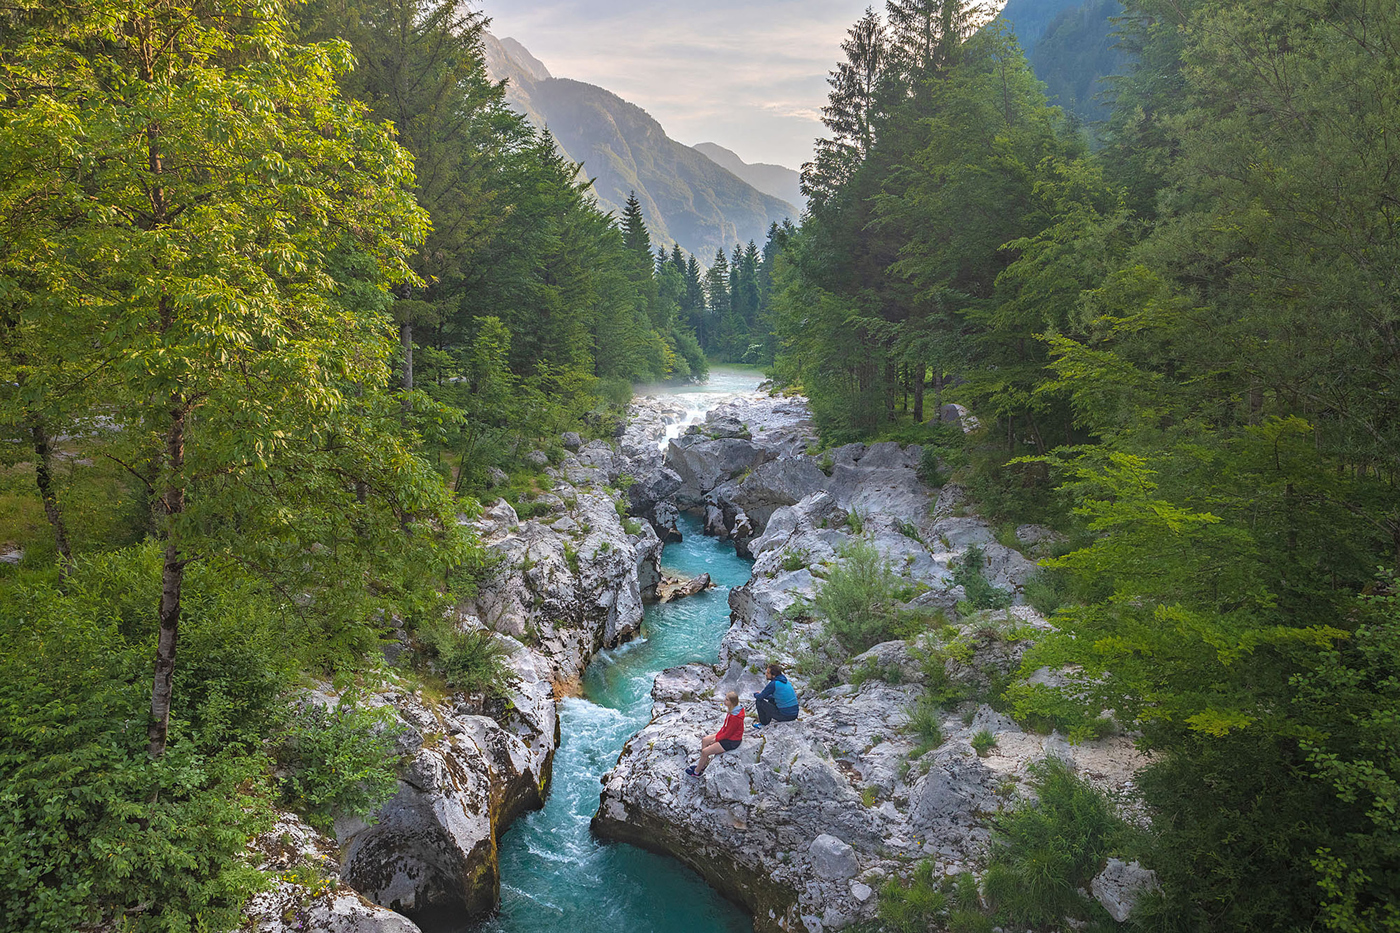 Slowenien gilt bezüglich  grünem Tourismus als Vorzeigeland. Zahlreiche Destinationen besitzen das international  anerkannte Nachhaltigkeits-label «Slovenia Green», wie etwa der Triglav National Park mit dem Soca Trail (Bild).  © Jost Gantar